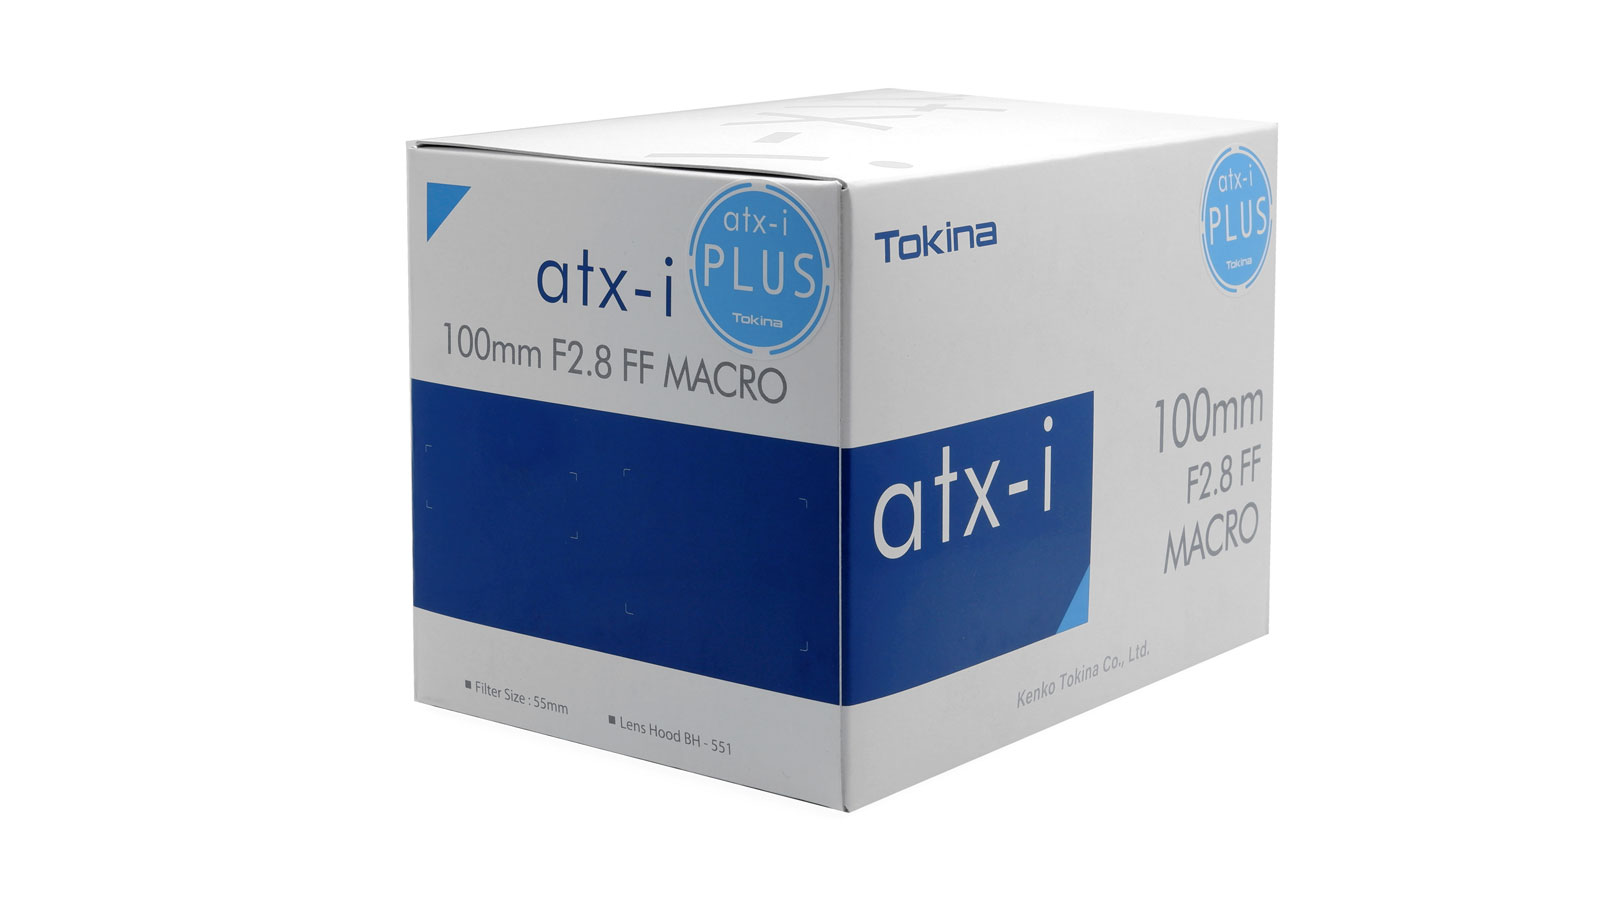 Пример упаковки серии Tokina atx-i с наклейкой "PLUS".